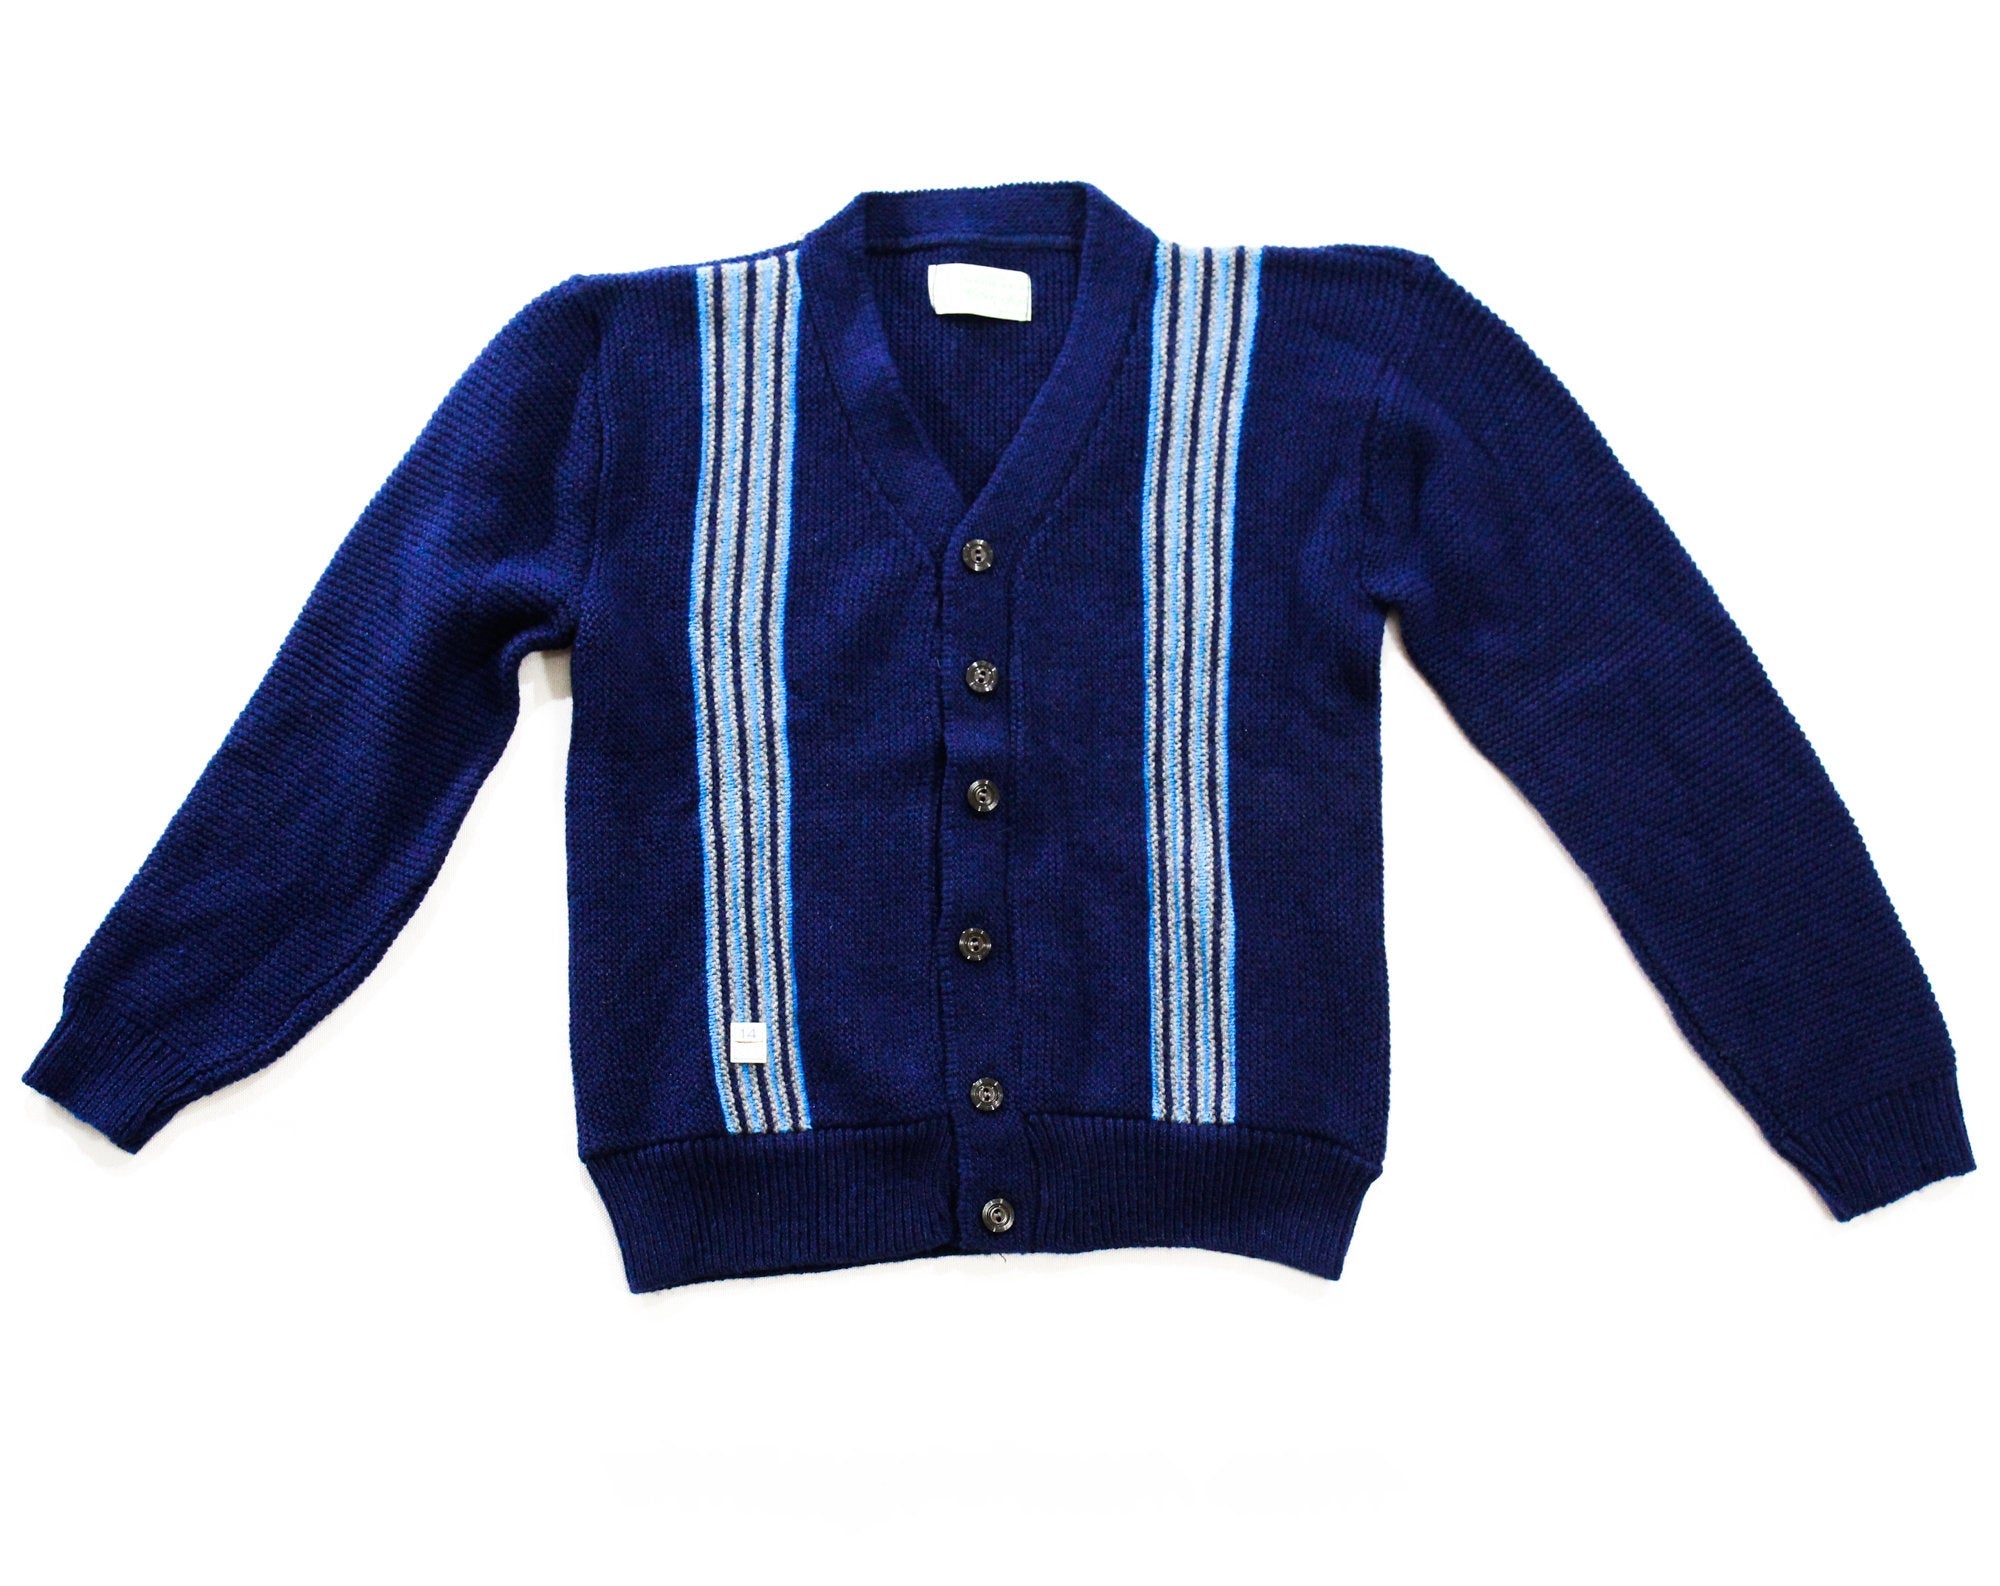 Teen Boy s Cardigan   s s Navy Button Front Sweater   Dark